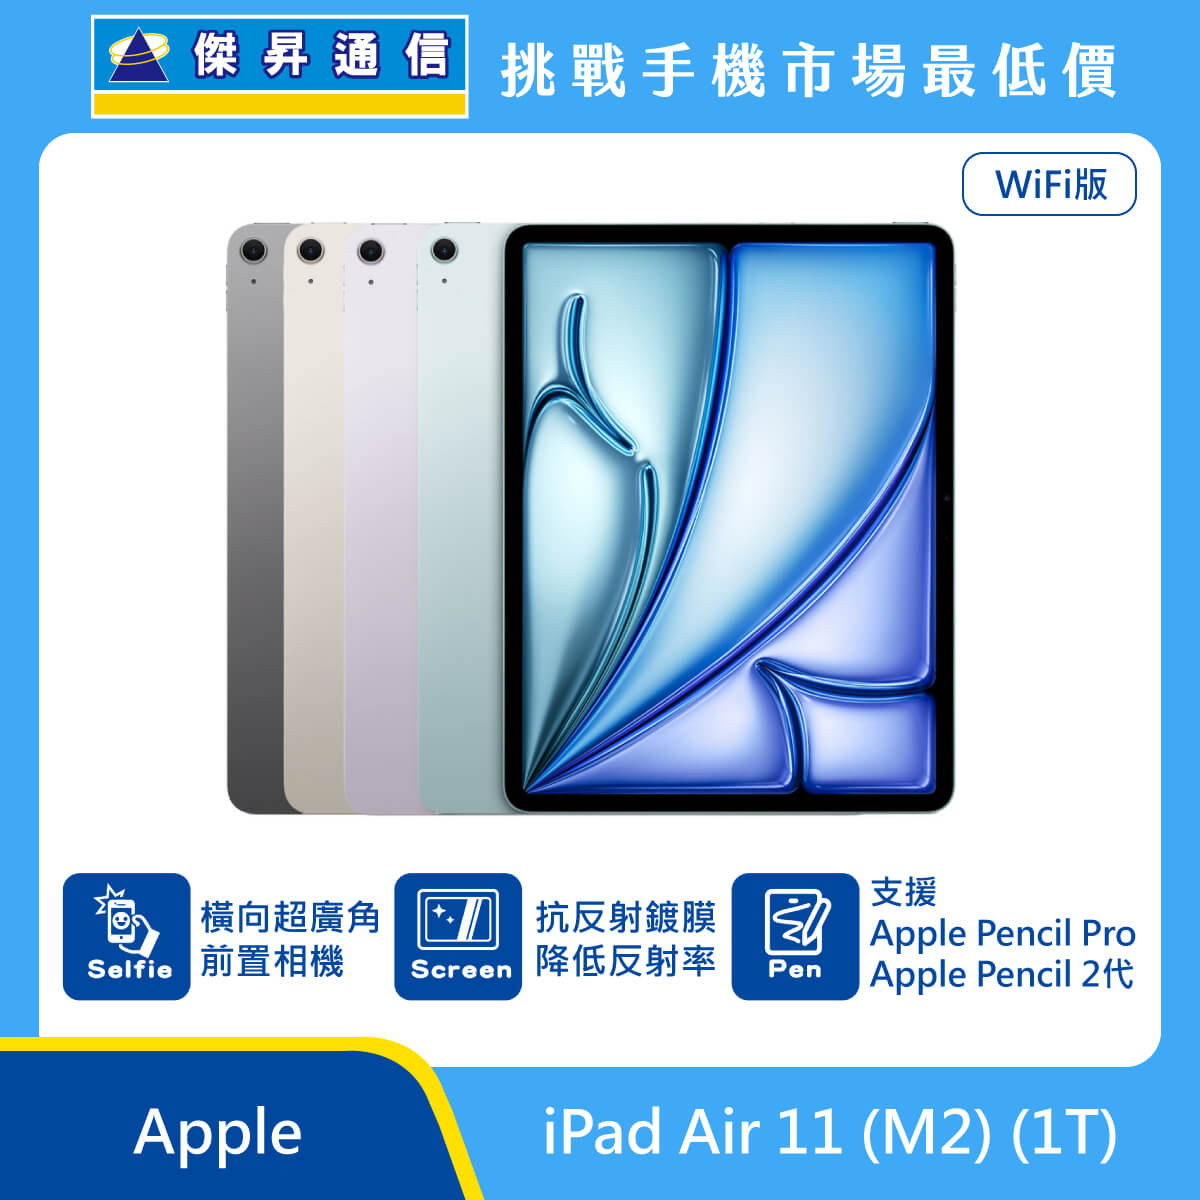 Apple 平板 iPad Air 11 M2 Wi-Fi (1T) 即將上市